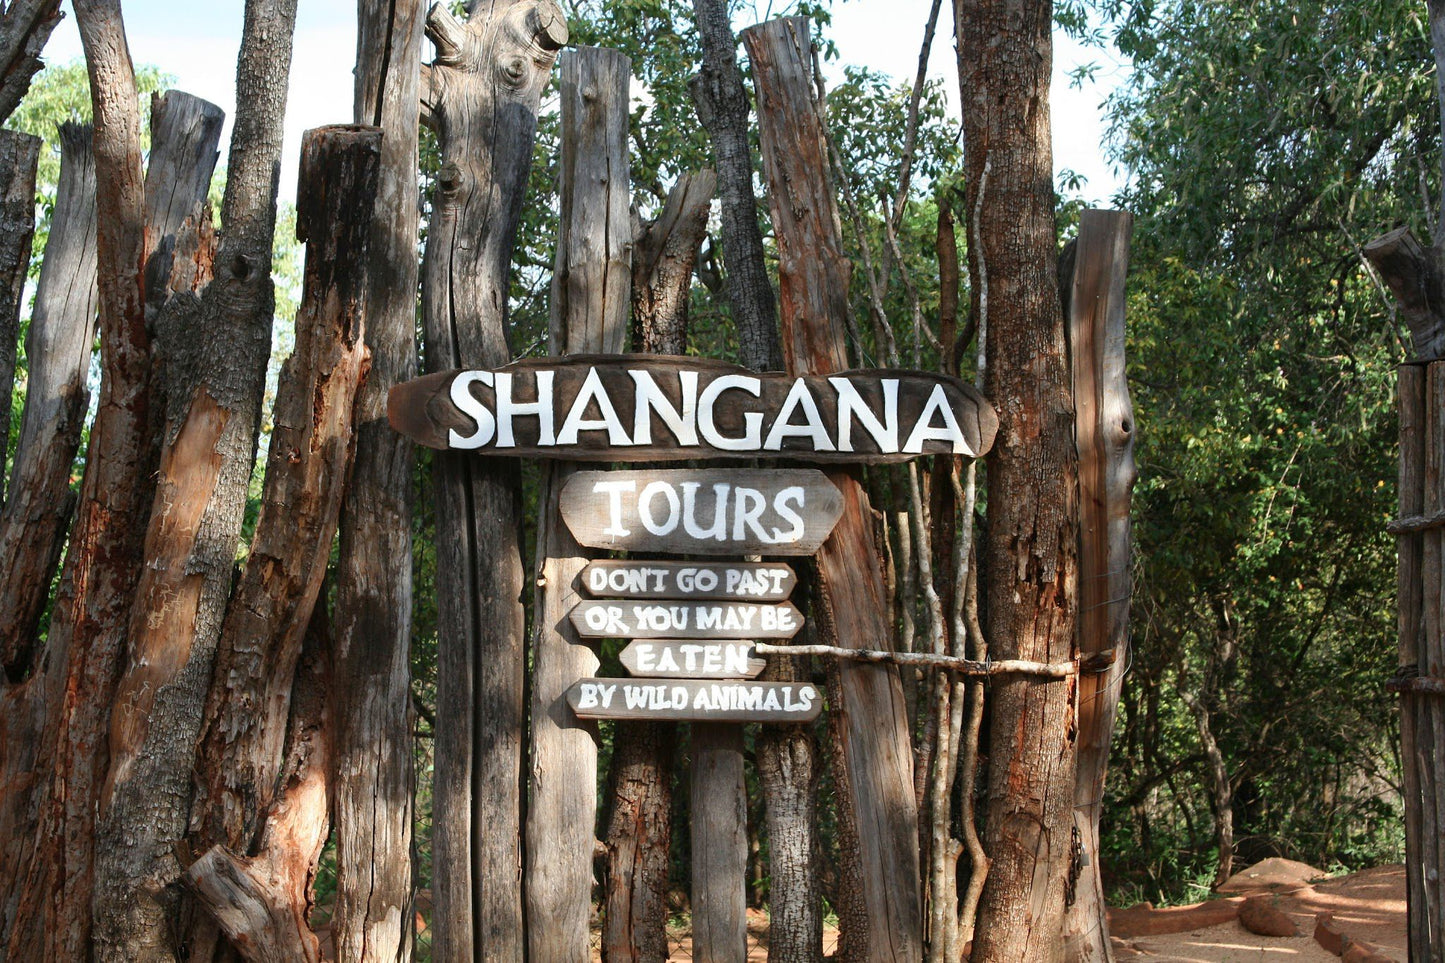  Shangana Cultural Village